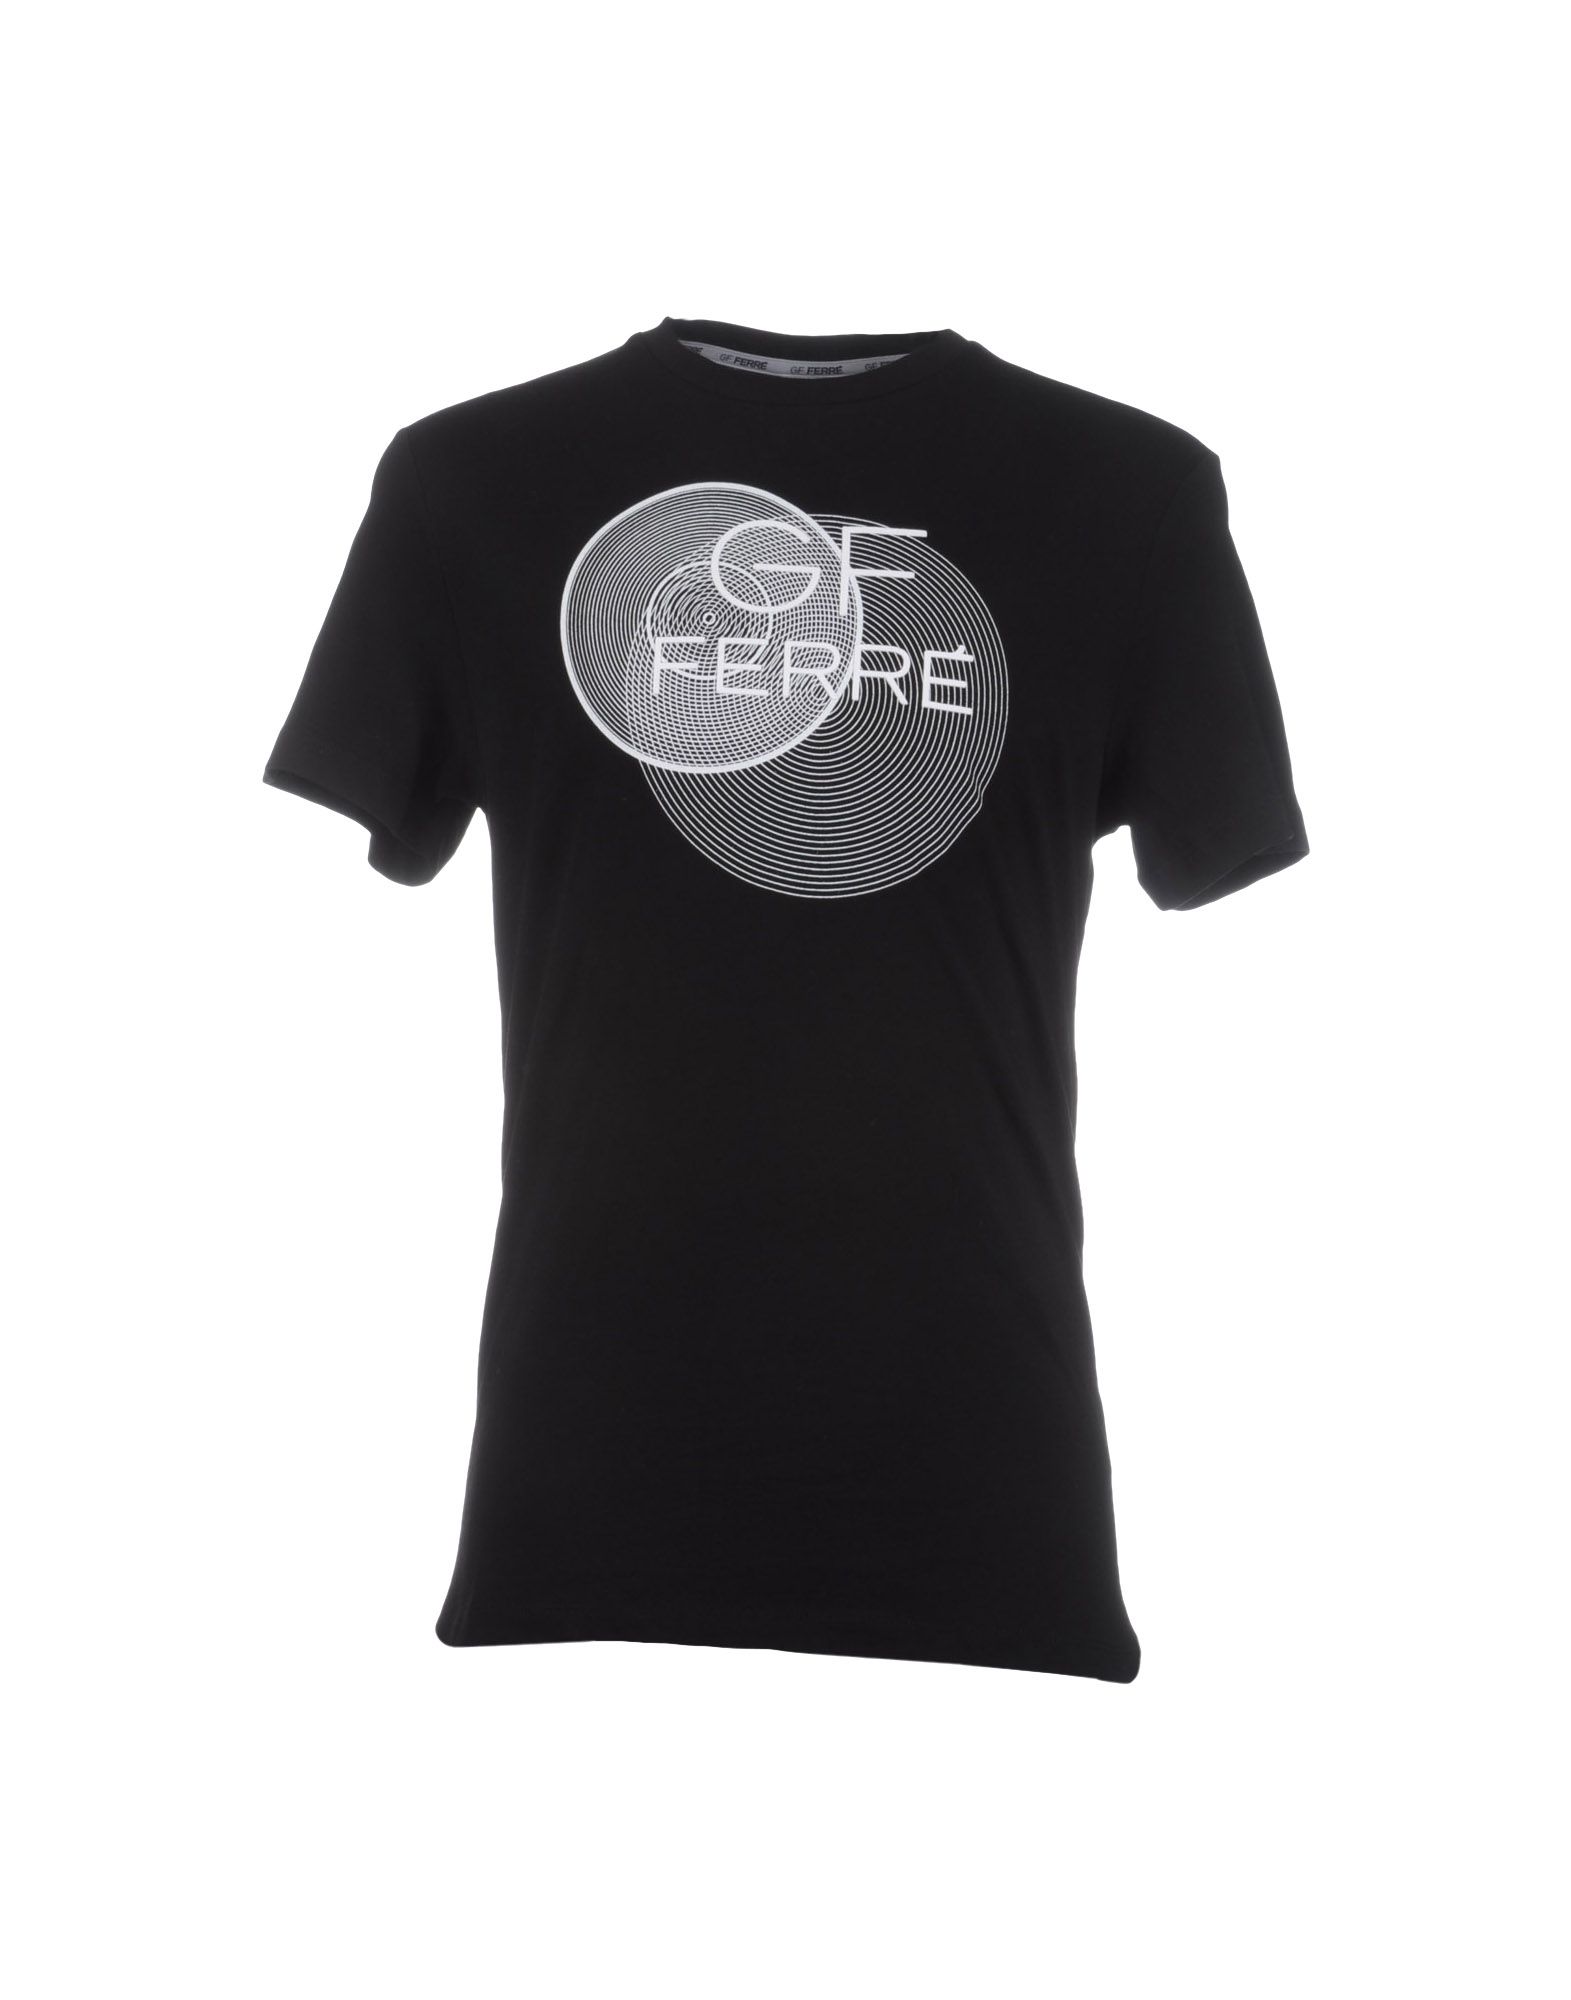 Lyst - Gianfranco Ferré Short Sleeve T-shirt in Black for Men